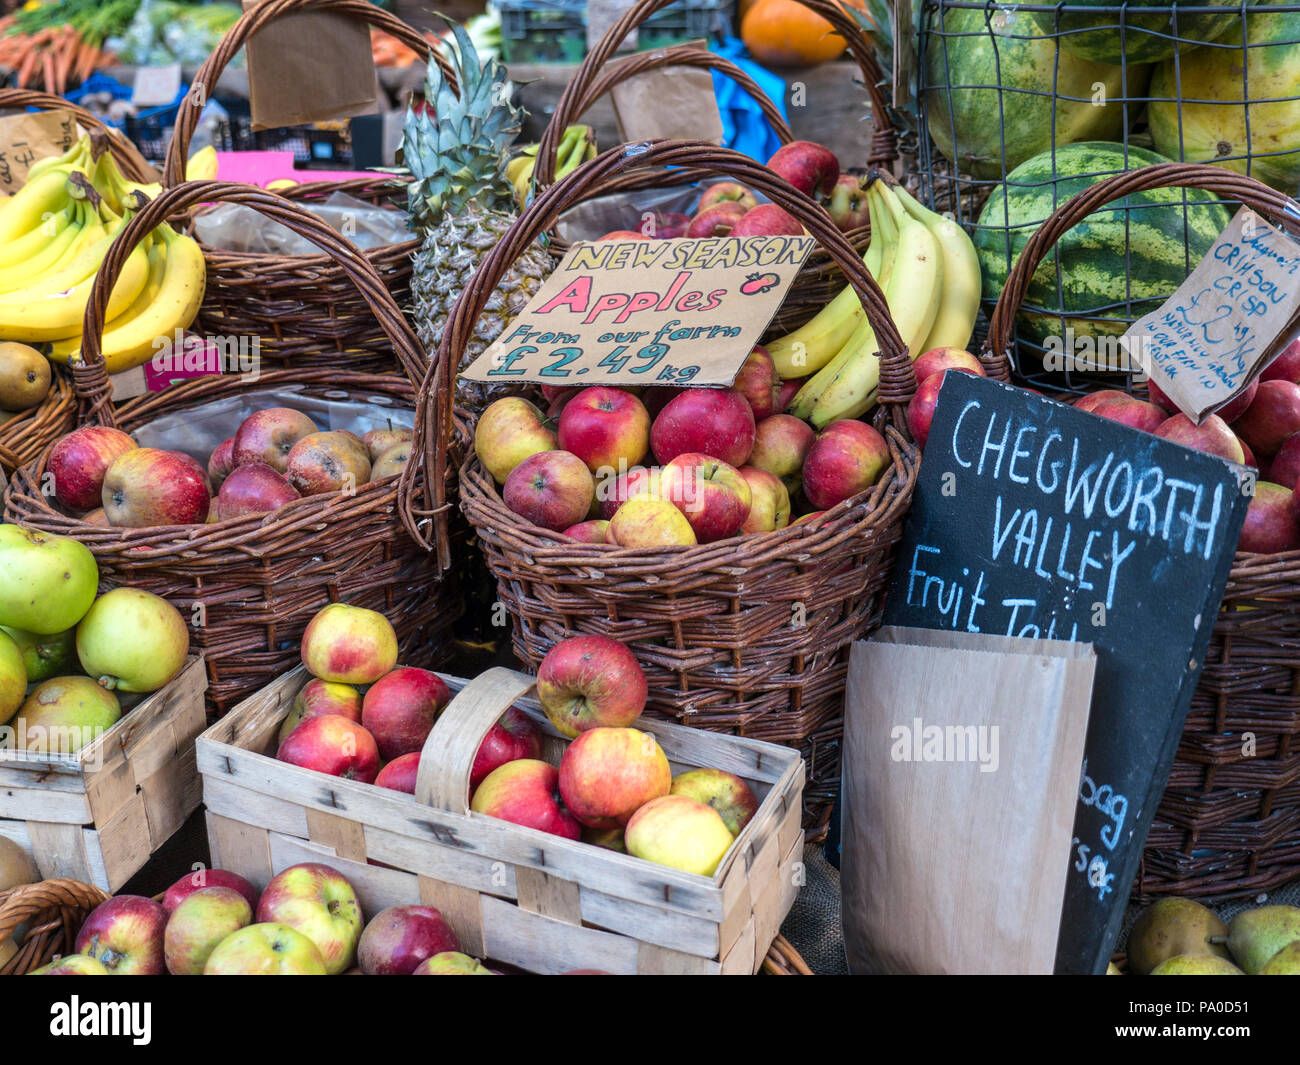 Borough Market inglese mele frutta Chegworth stallo Valley a conduzione familiare frutticolo lato selezionato nuova frutta di stagione Southwark London REGNO UNITO Foto Stock